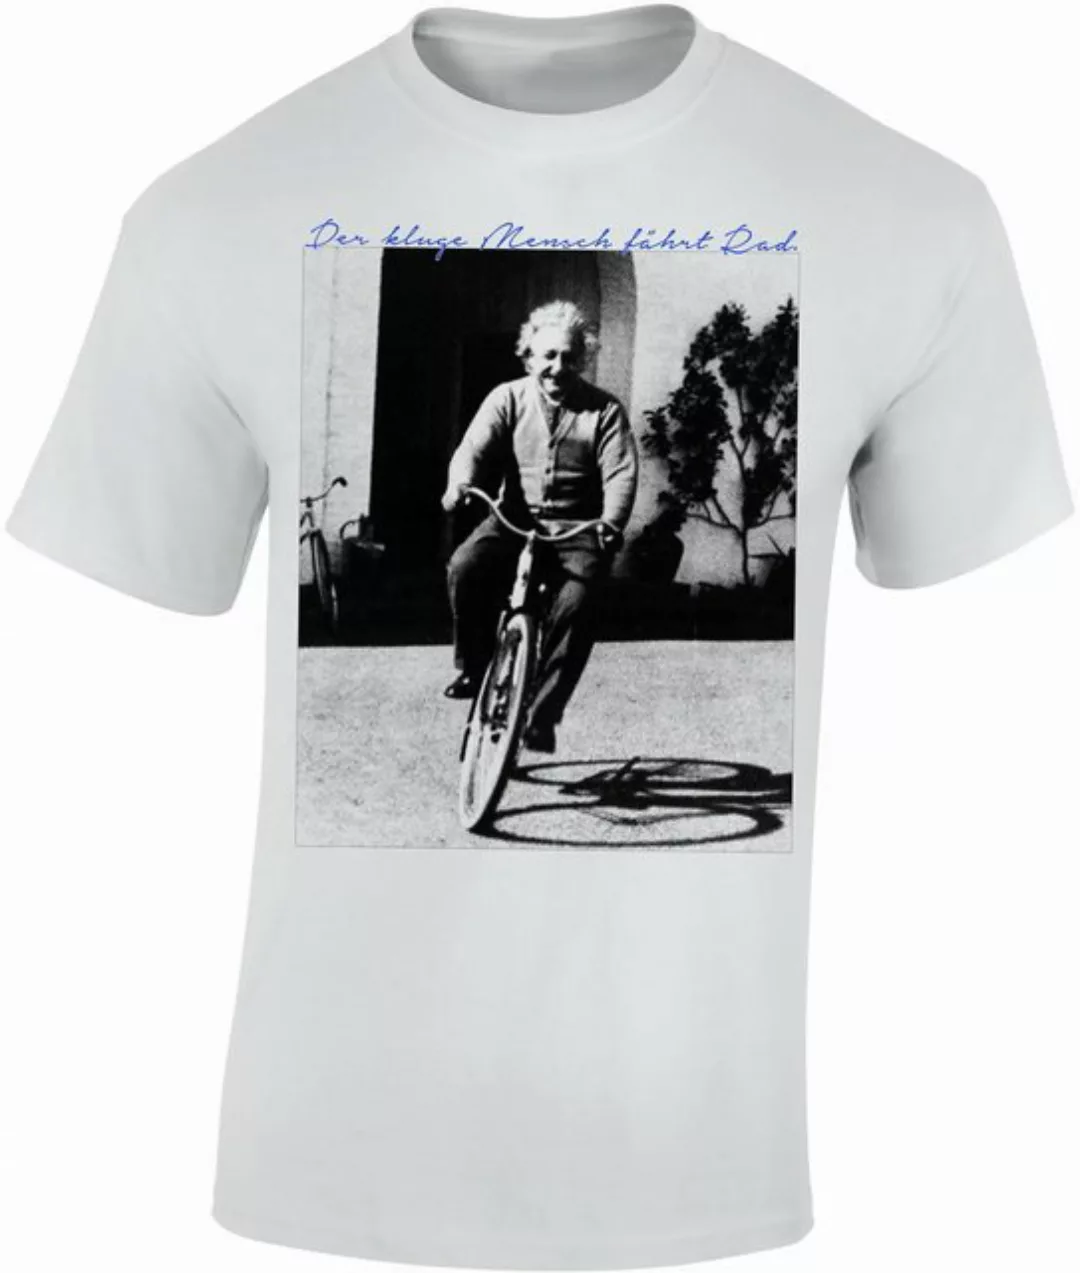 Baddery Print-Shirt Fahrrad T-Shirt : "Der kluge Mensch fährt Rad", hochwer günstig online kaufen